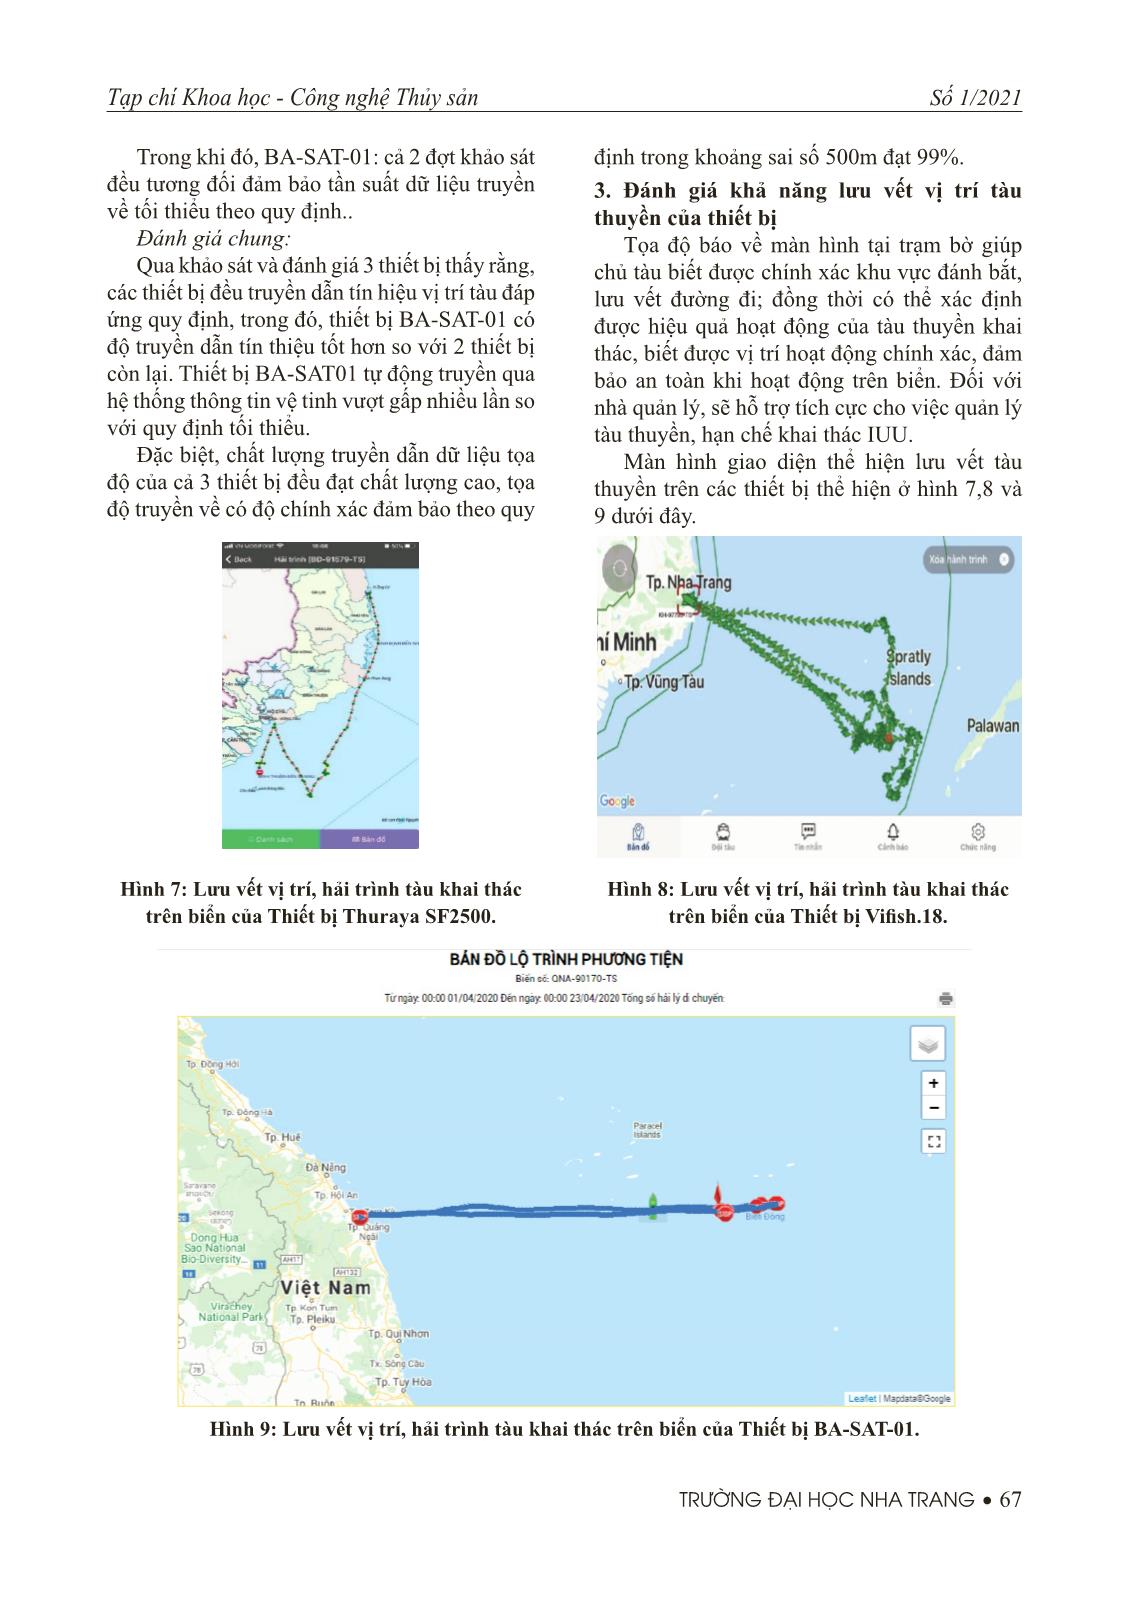 Nghiên cứu đánh giá hoạt động của thiết bị giám sát tàu cá ở khu vực Miền Trung trang 5